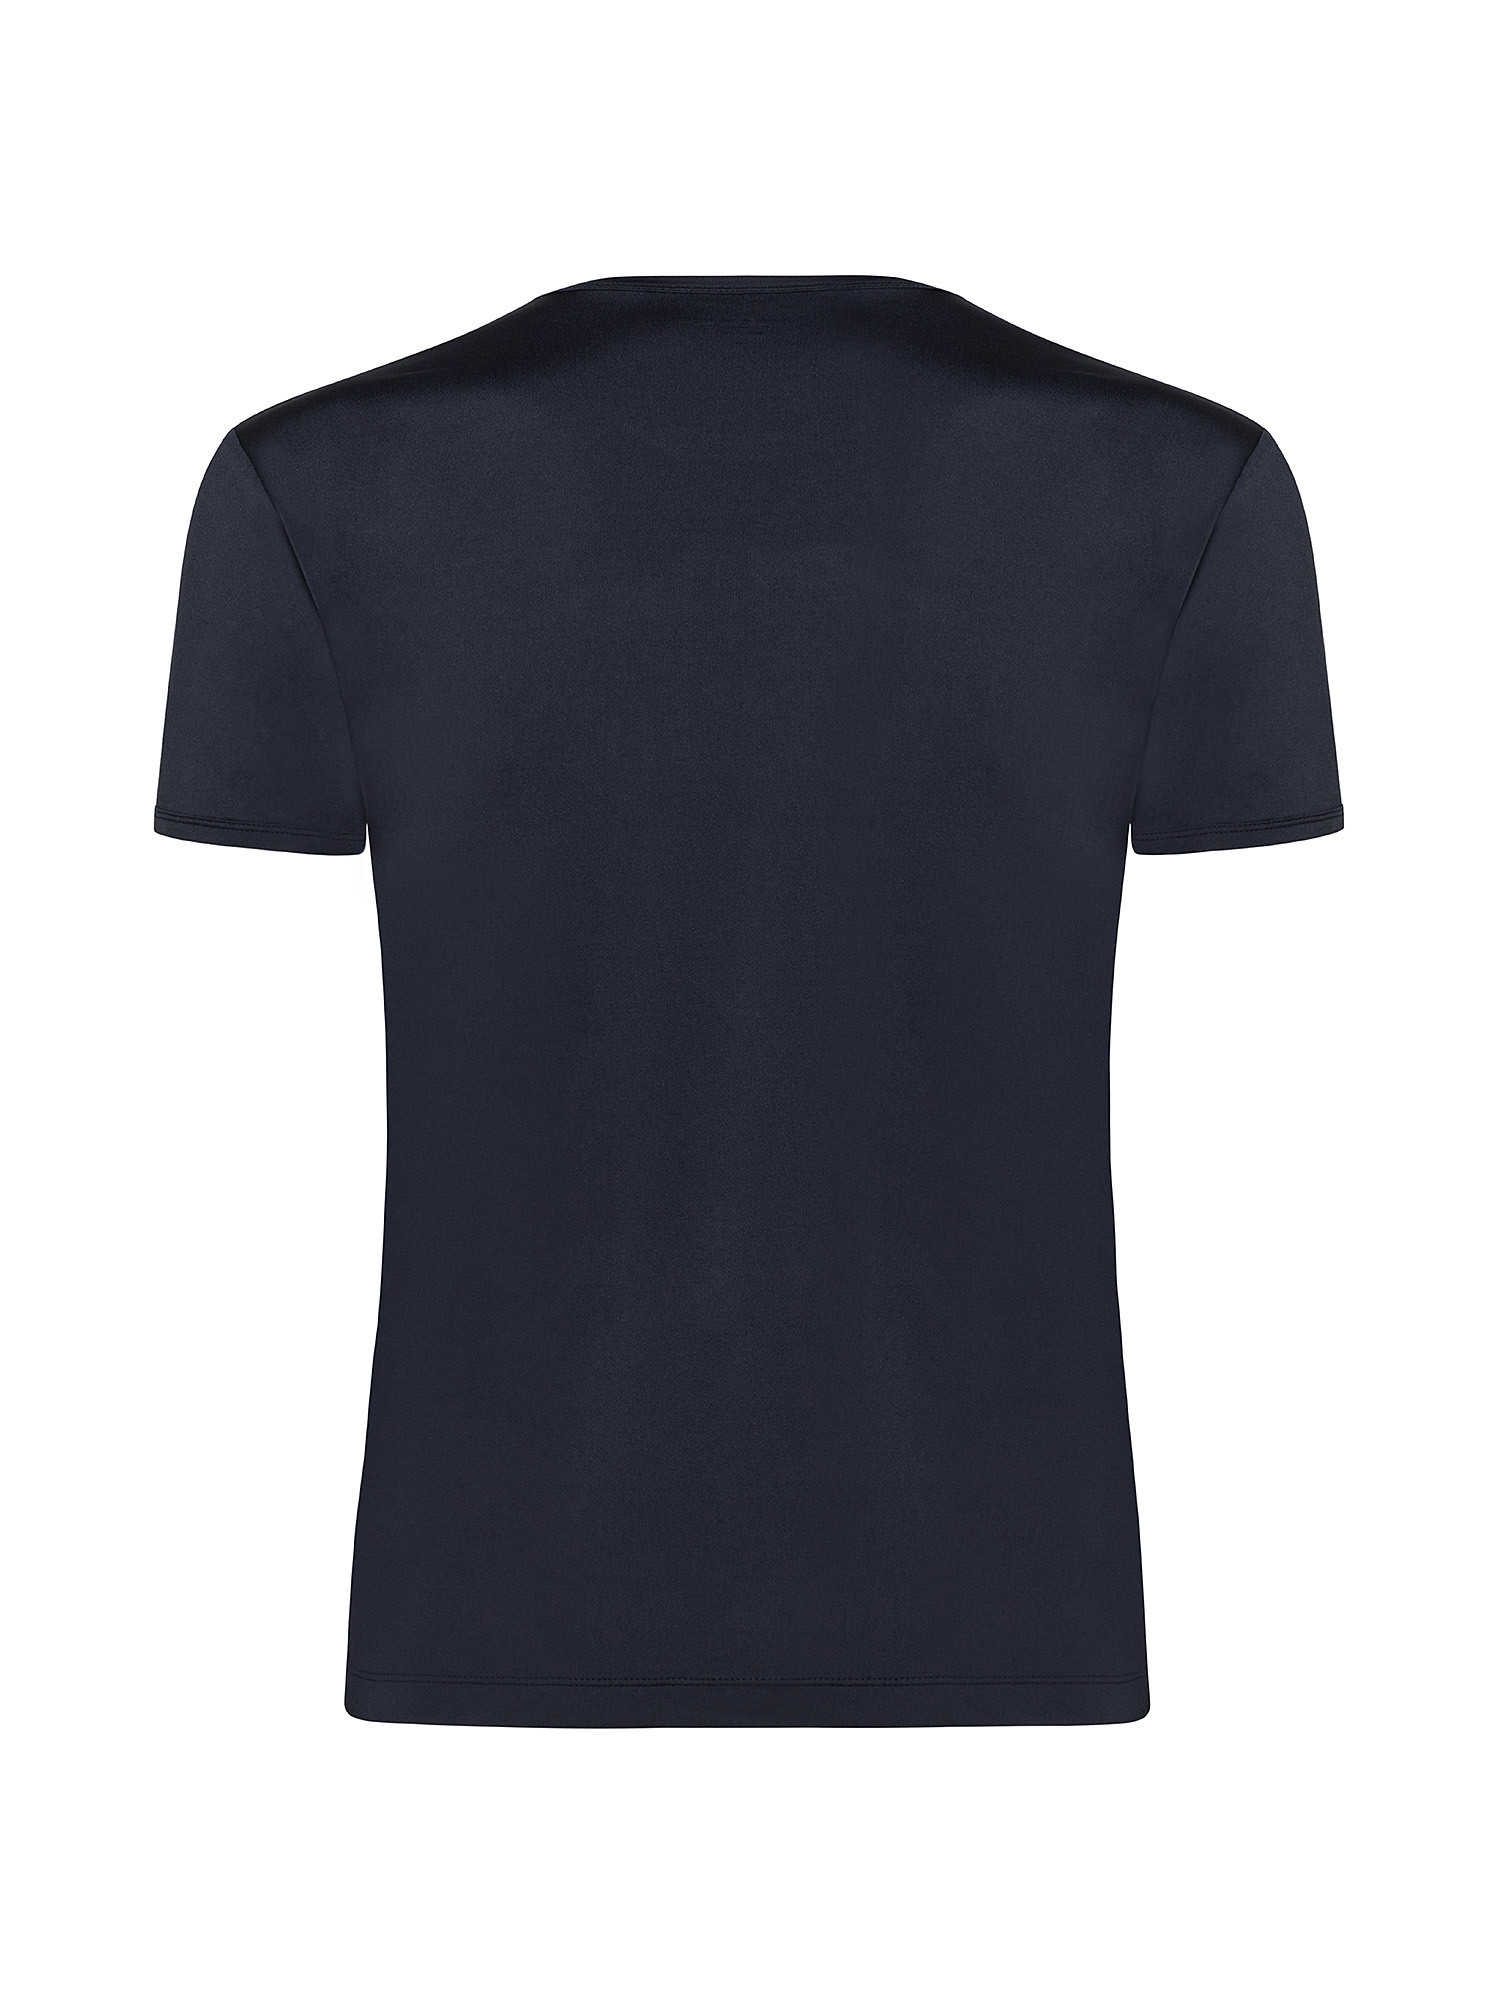 T-shirt girocollo microfibra tinta unita, Blu, large image number 1